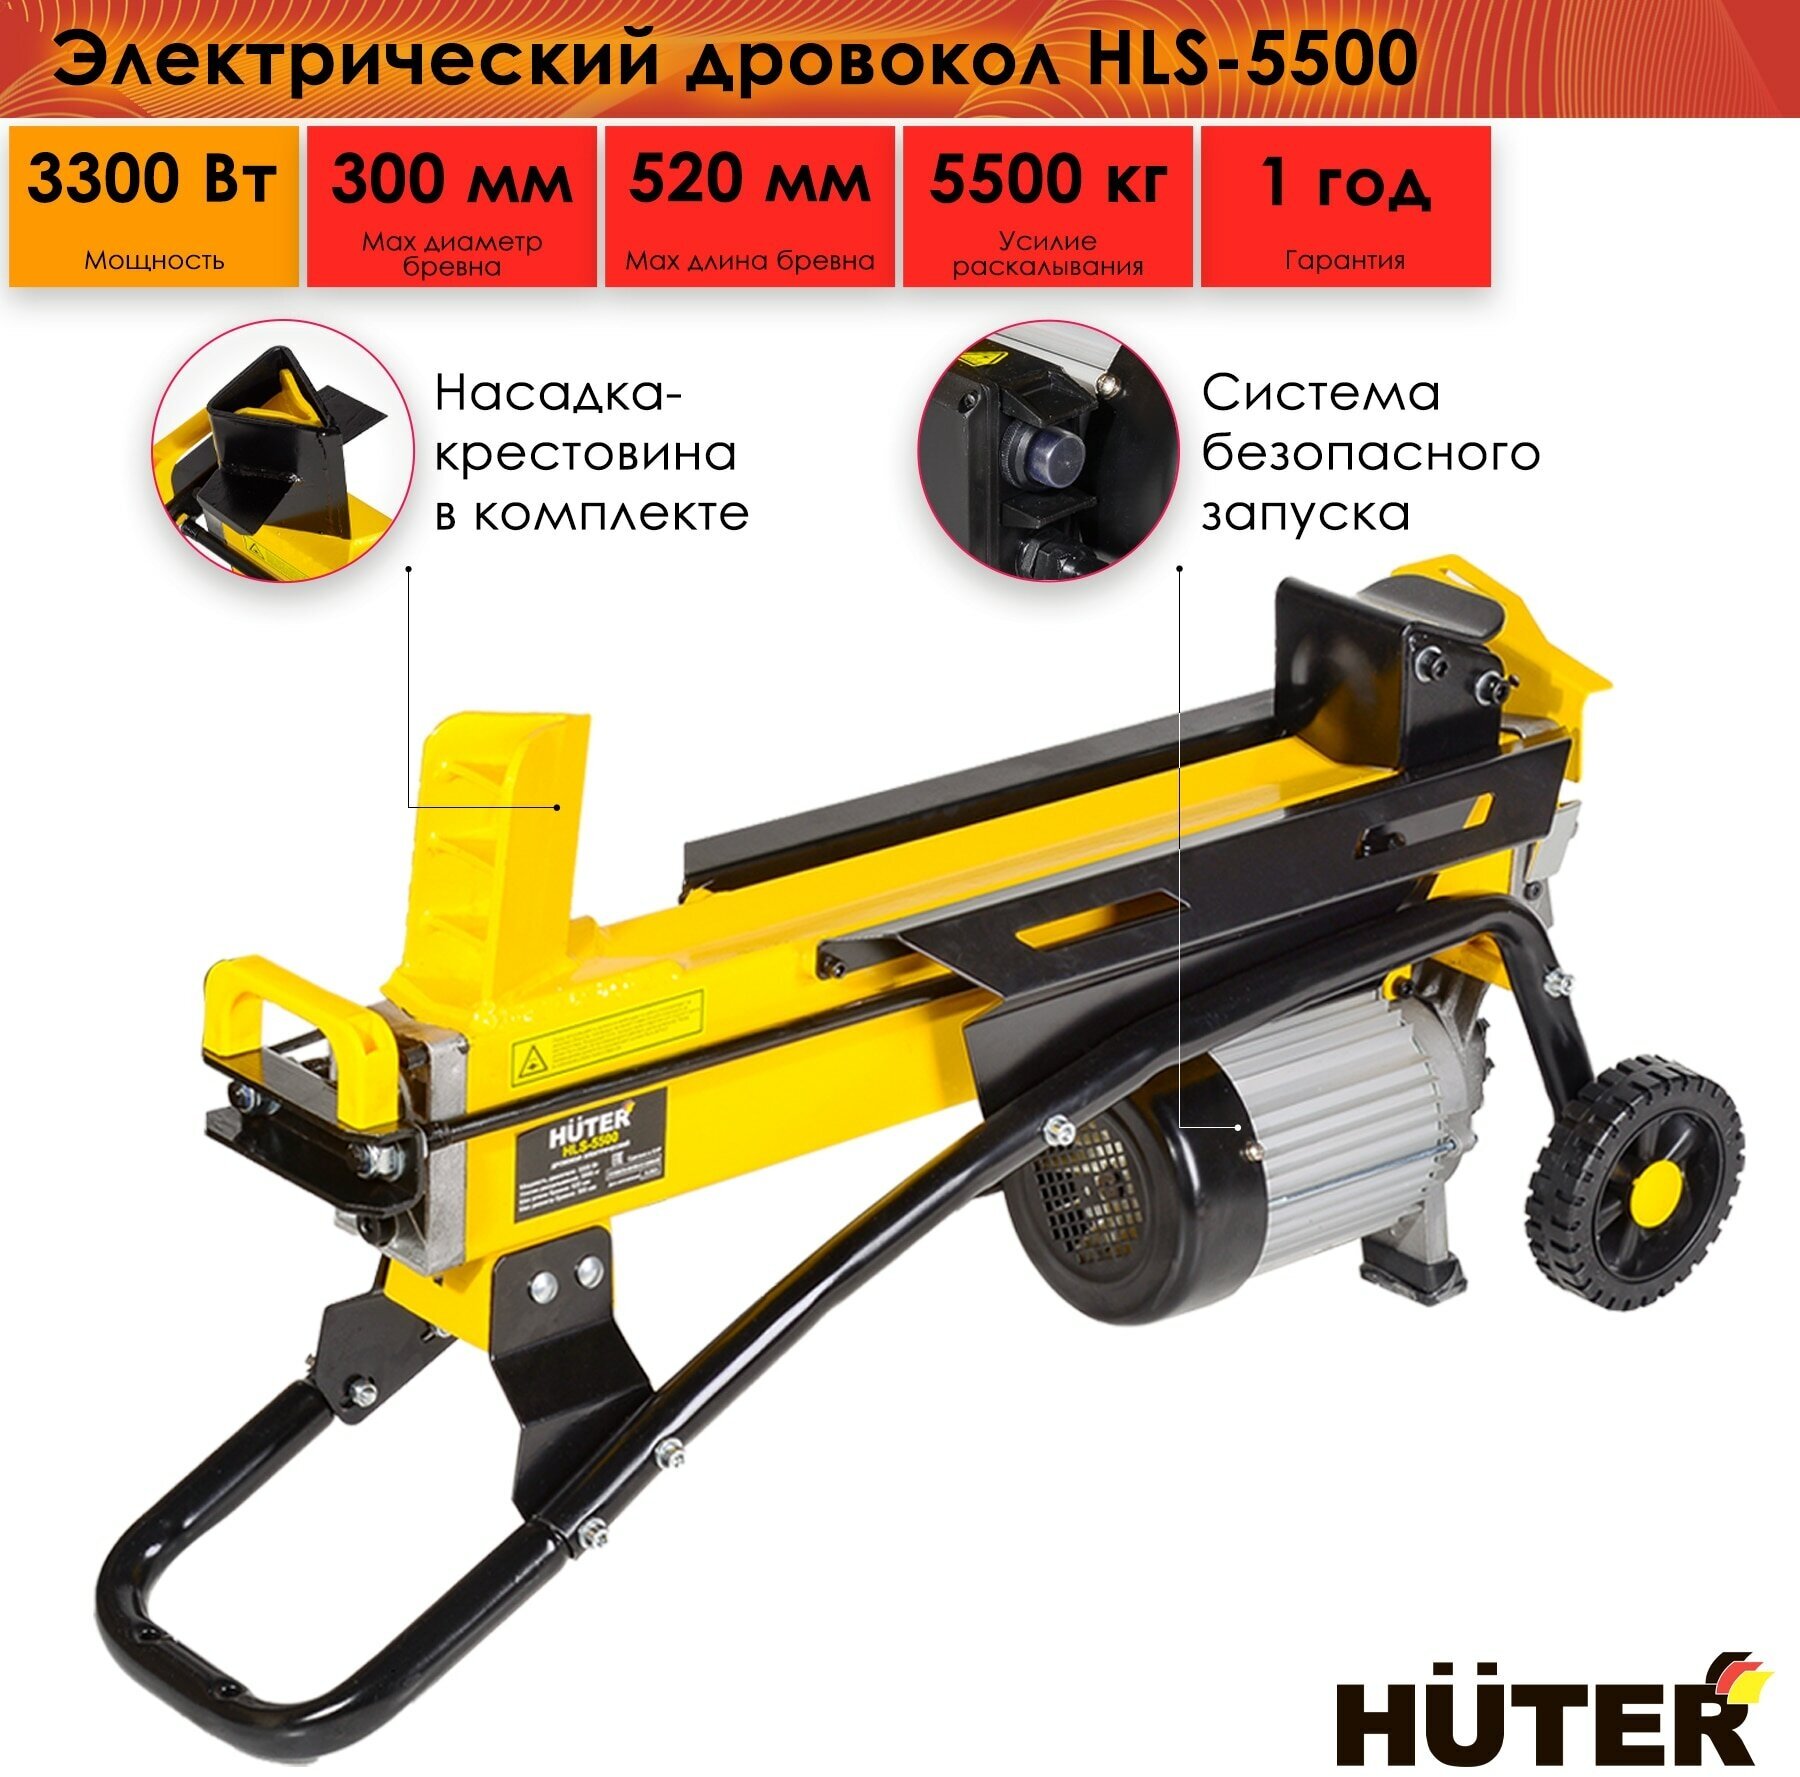 Электрический гидравлический дровокол Huter HLS-5500 55 т